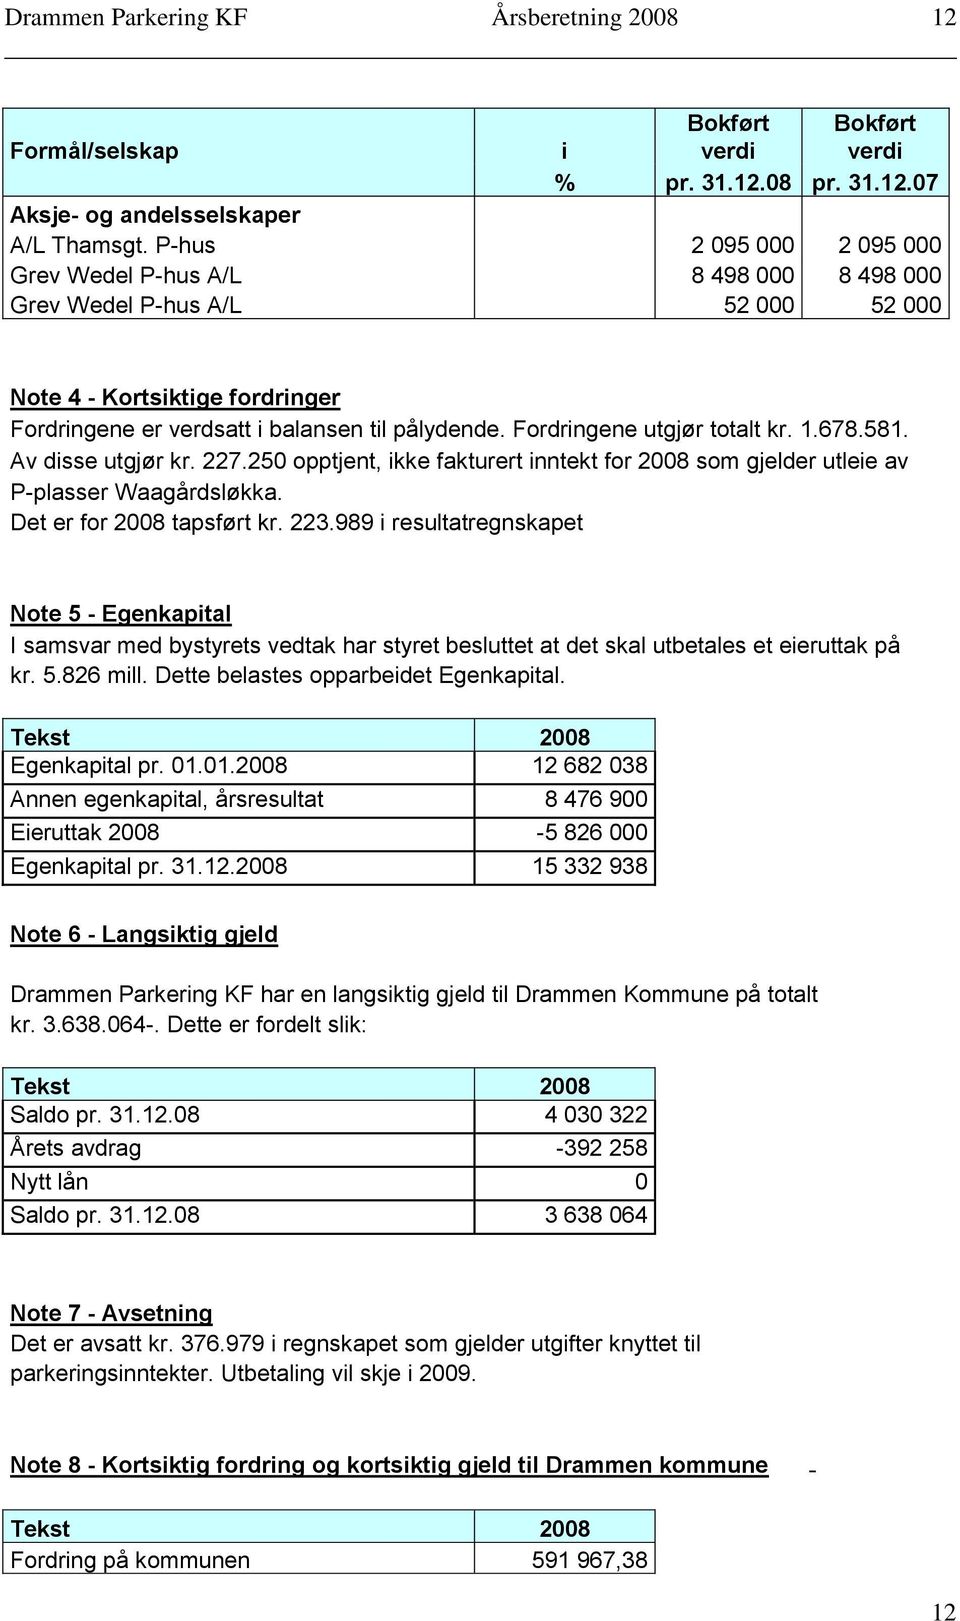 Fordringene utgjør totalt kr. 1.678.581. Av disse utgjør kr. 227.250 opptjent, ikke fakturert inntekt for 2008 som gjelder utleie av P-plasser Waagårdsløkka. Det er for 2008 tapsført kr. 223.